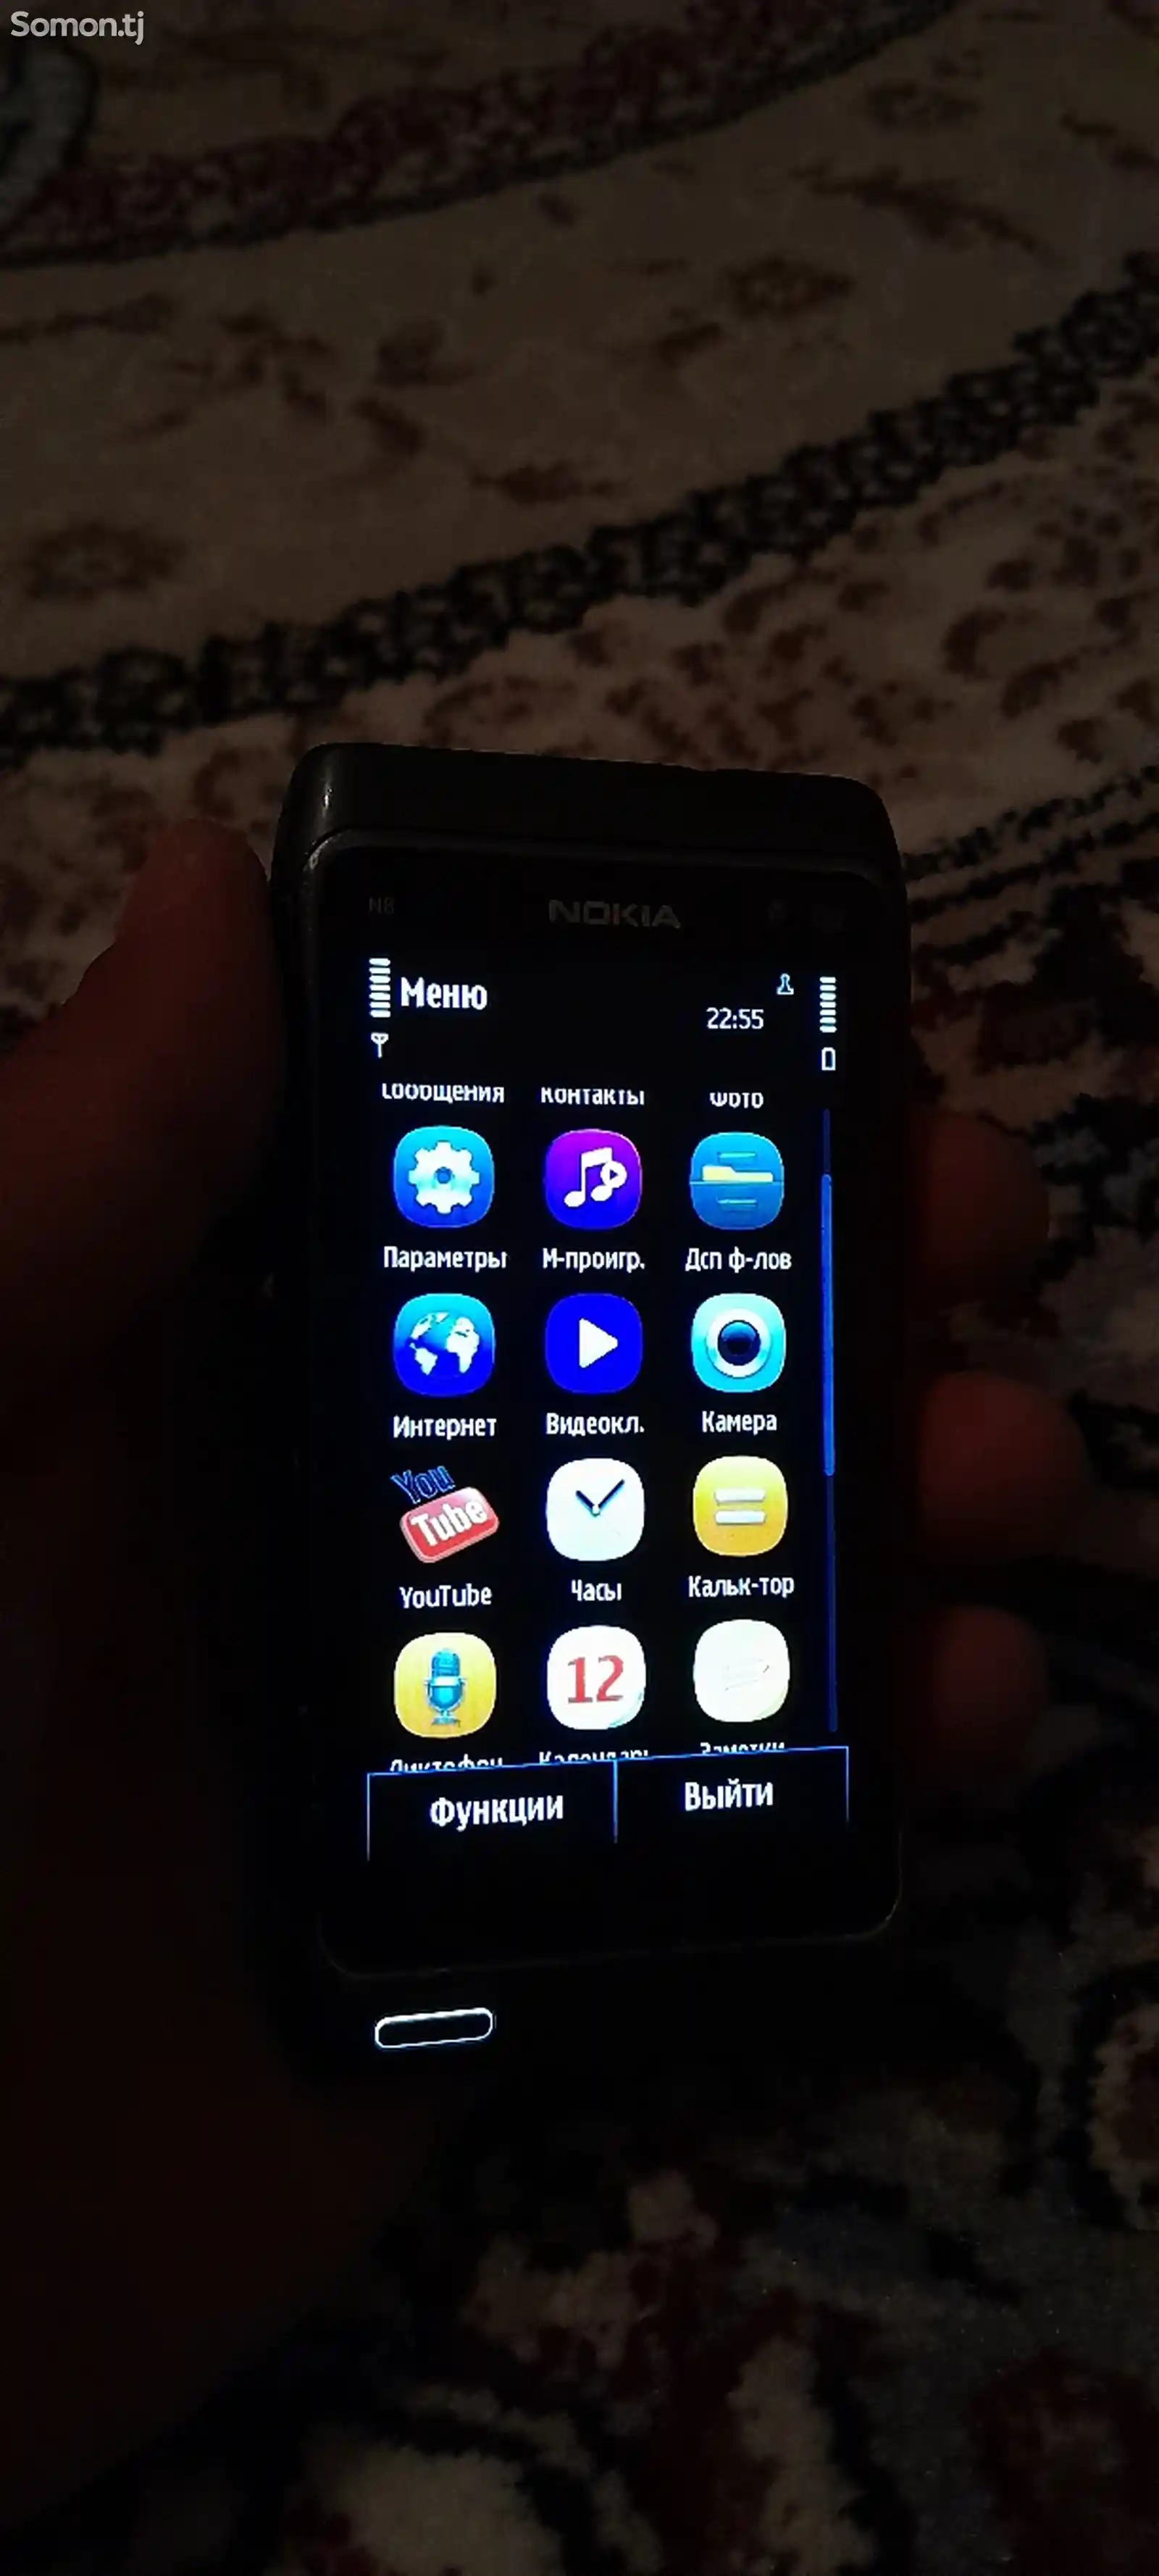 Nokia N8-00-3